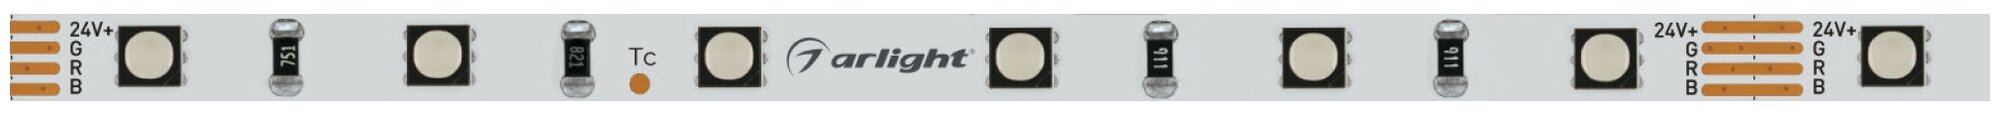 Лента MINI-F60-5mm 24V RGB (6 W/m, IP20, 3535, 5m) (ARL, узкая) Arlight - фото №3